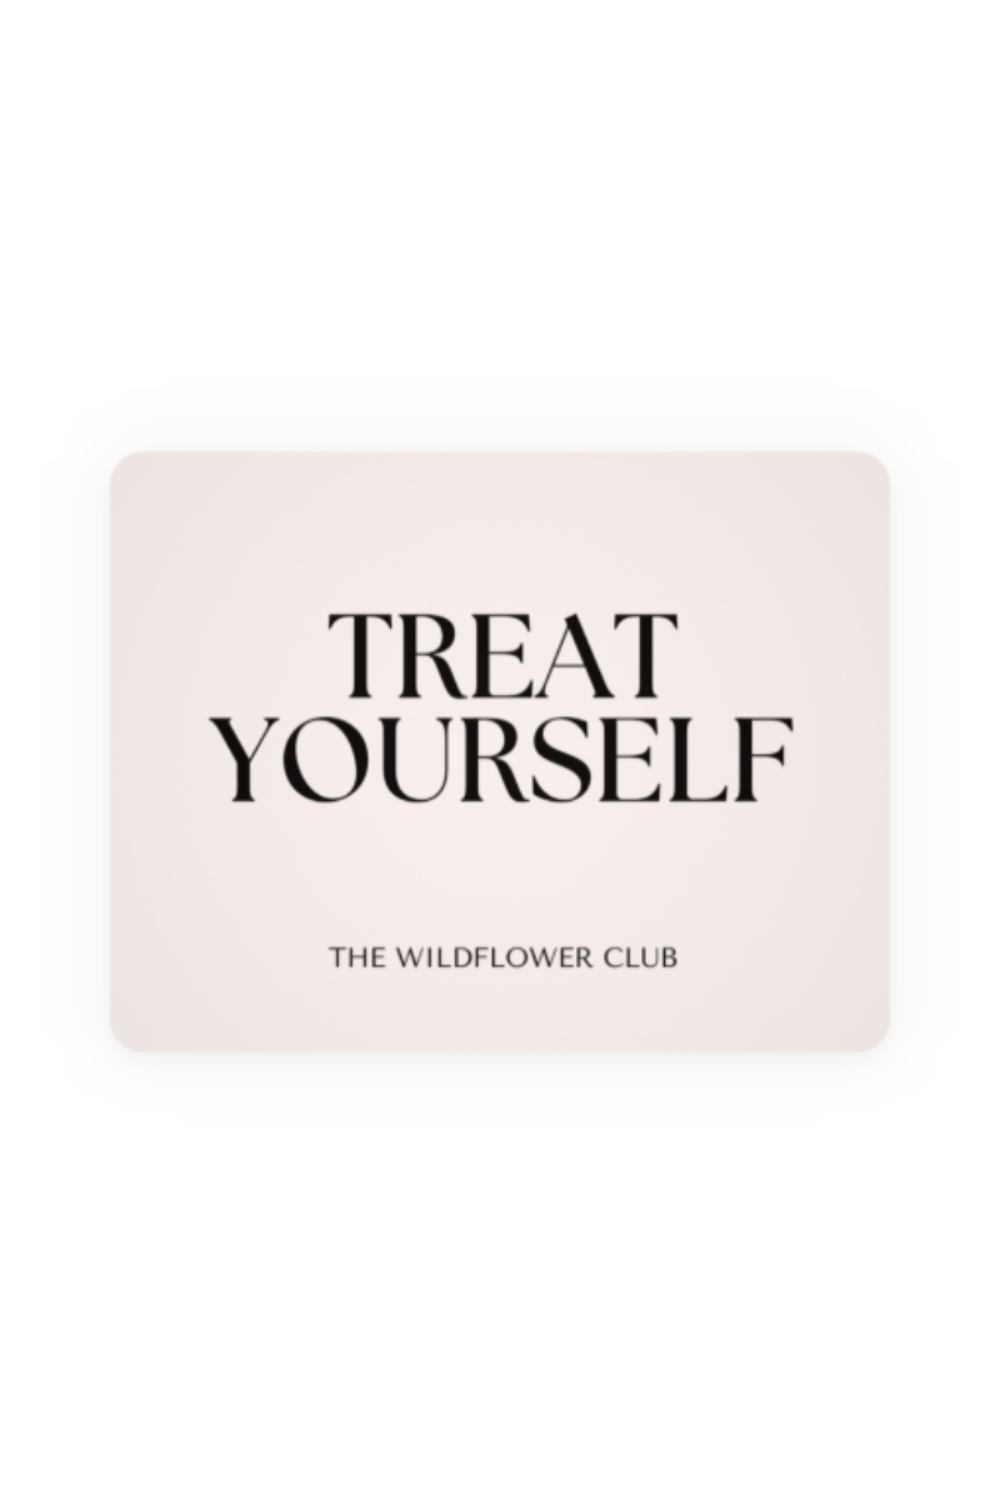 Digital gift card The Wildflower Club